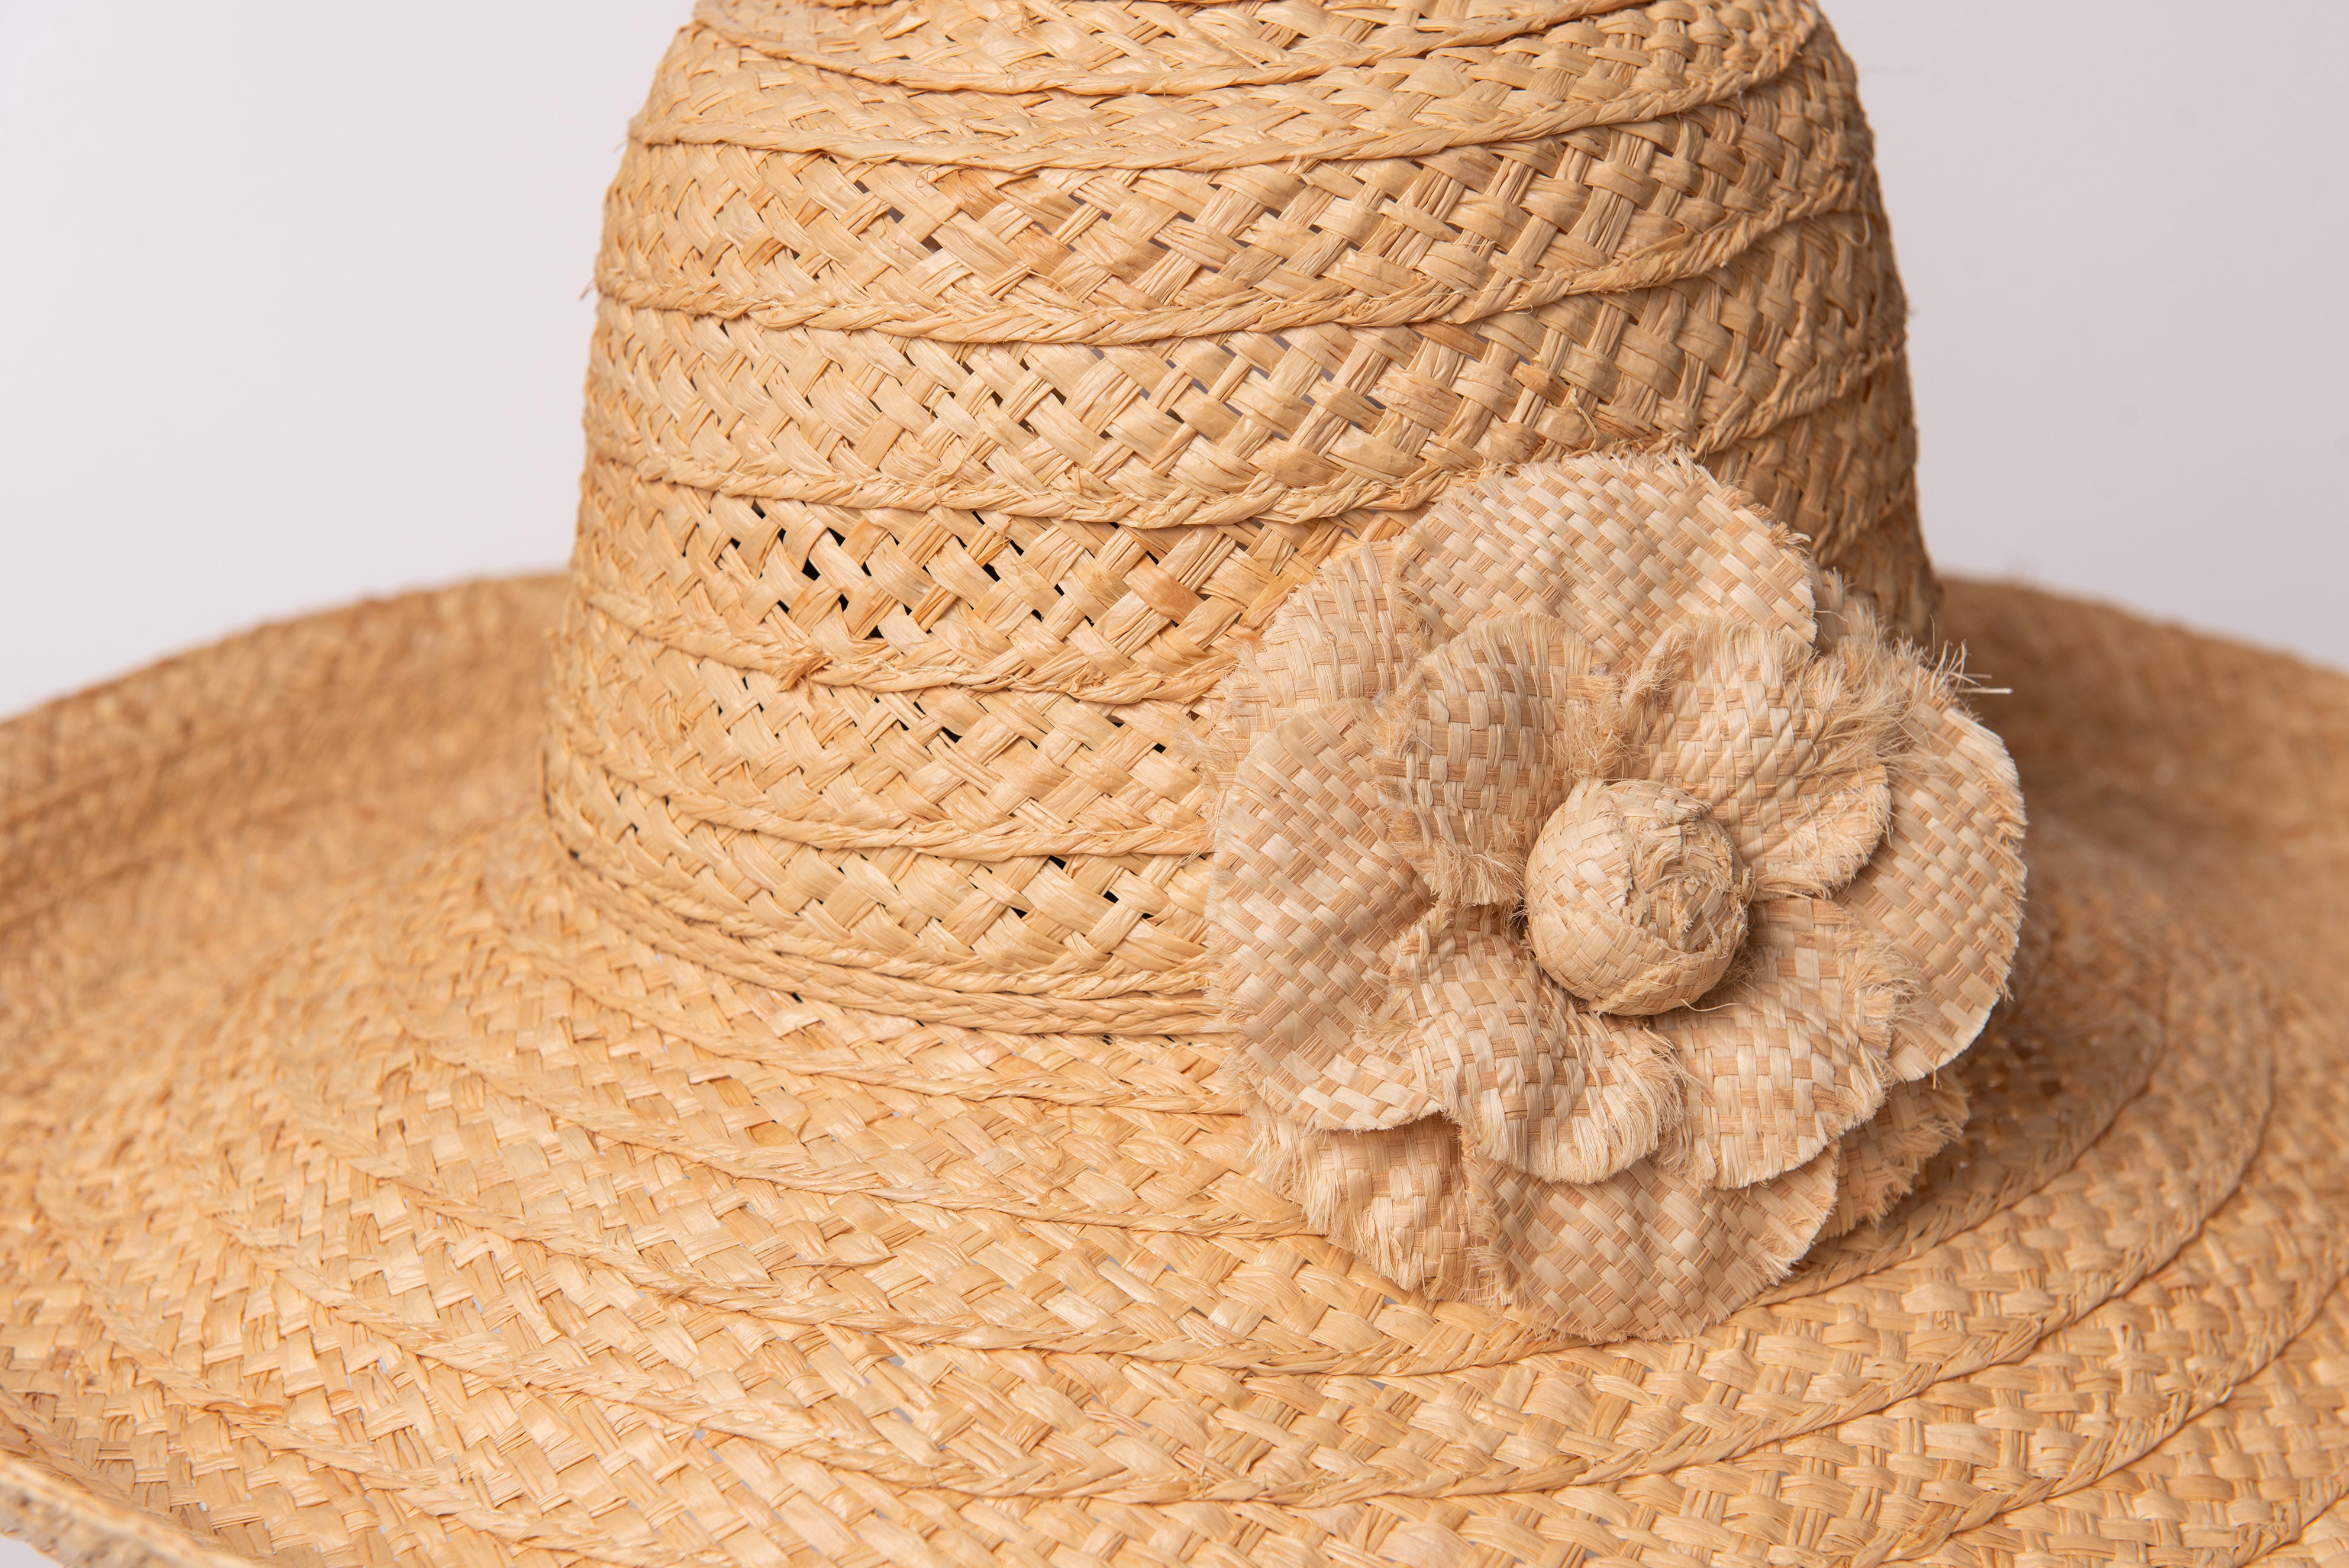 Patachou floral-detail sun hat - Neutrals